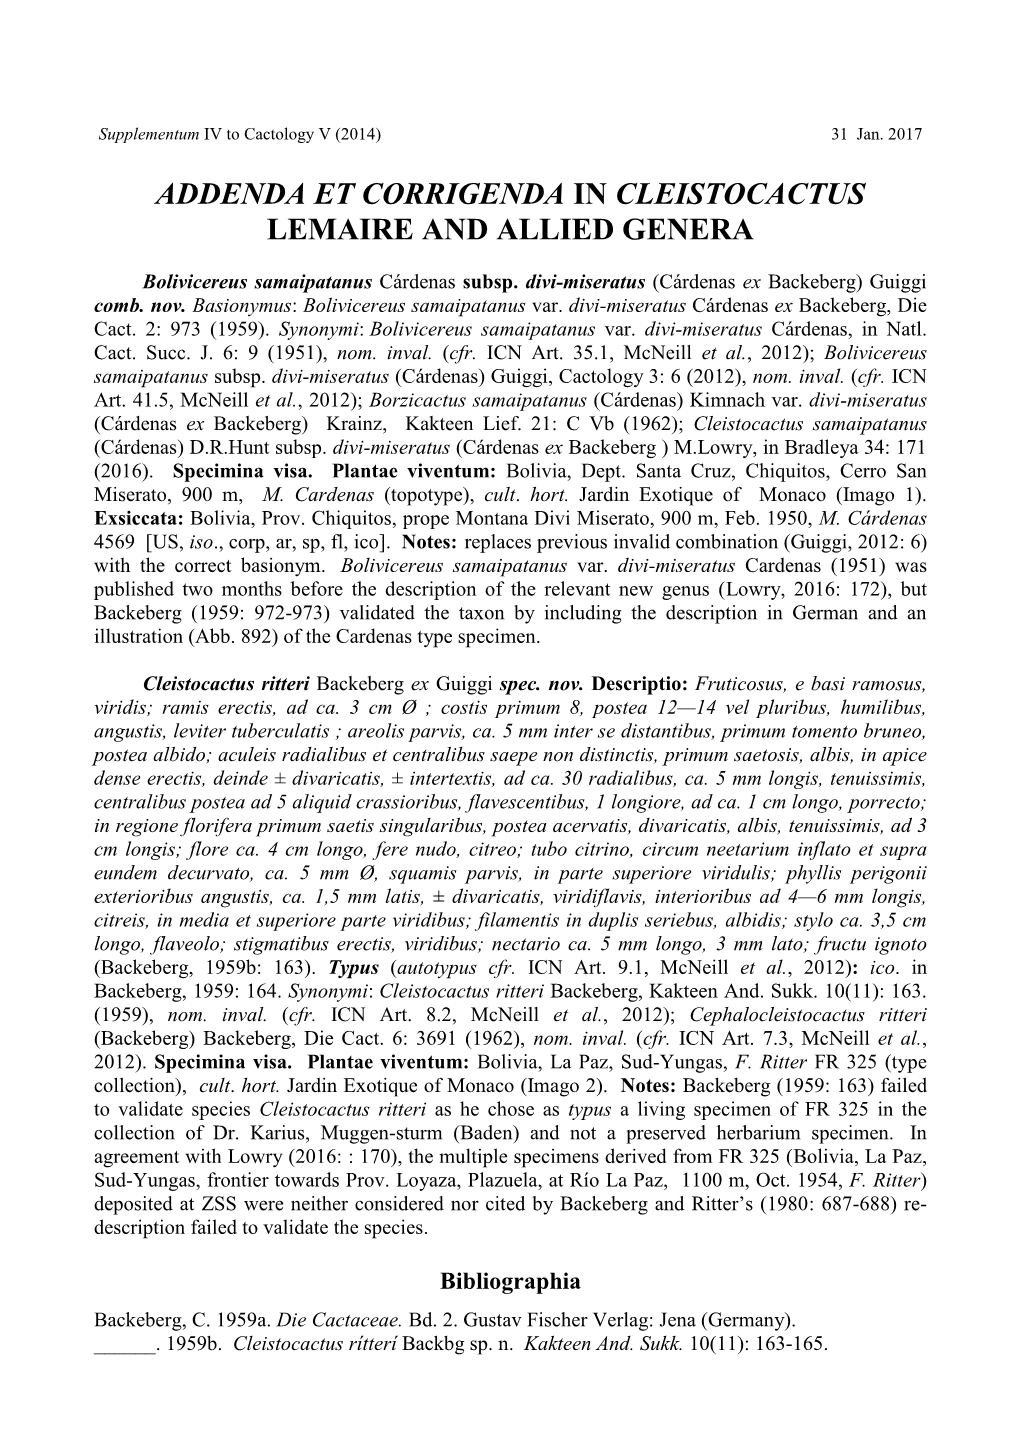 Addenda Et Corrigenda in Cleistocactus Lemaire and Allied Genera